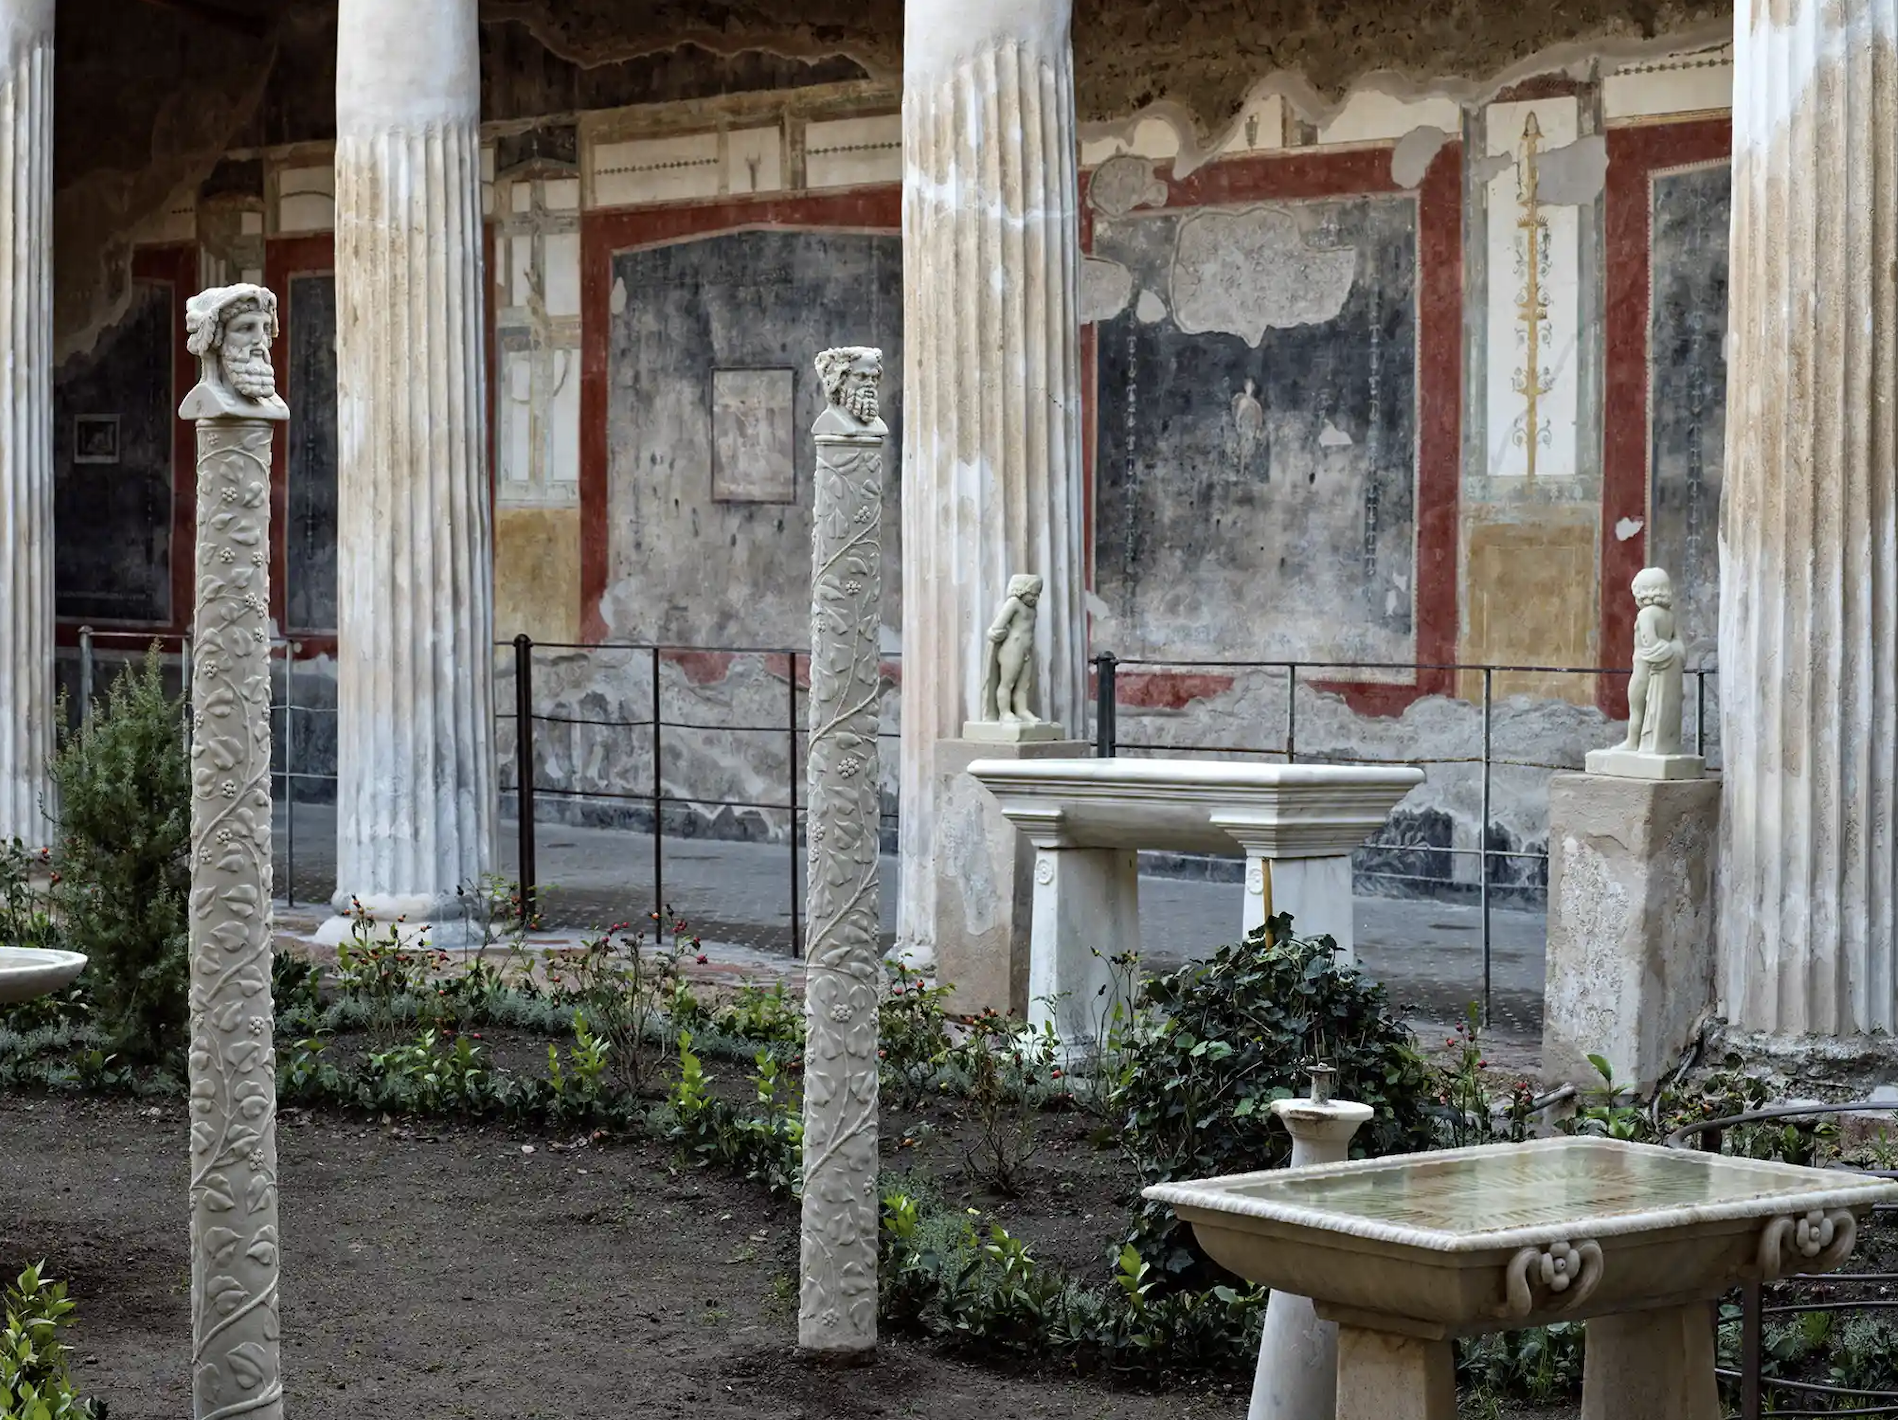 Việc ra mắt ngôi nhà đã được khôi phục sau nhiều năm bị bỏ quên, lũ lụt và cướp bóc của những tên trộm để tìm kiếm đồ tạo tác để bán Ảnh: Parco Archeologico Pompei/Reuters